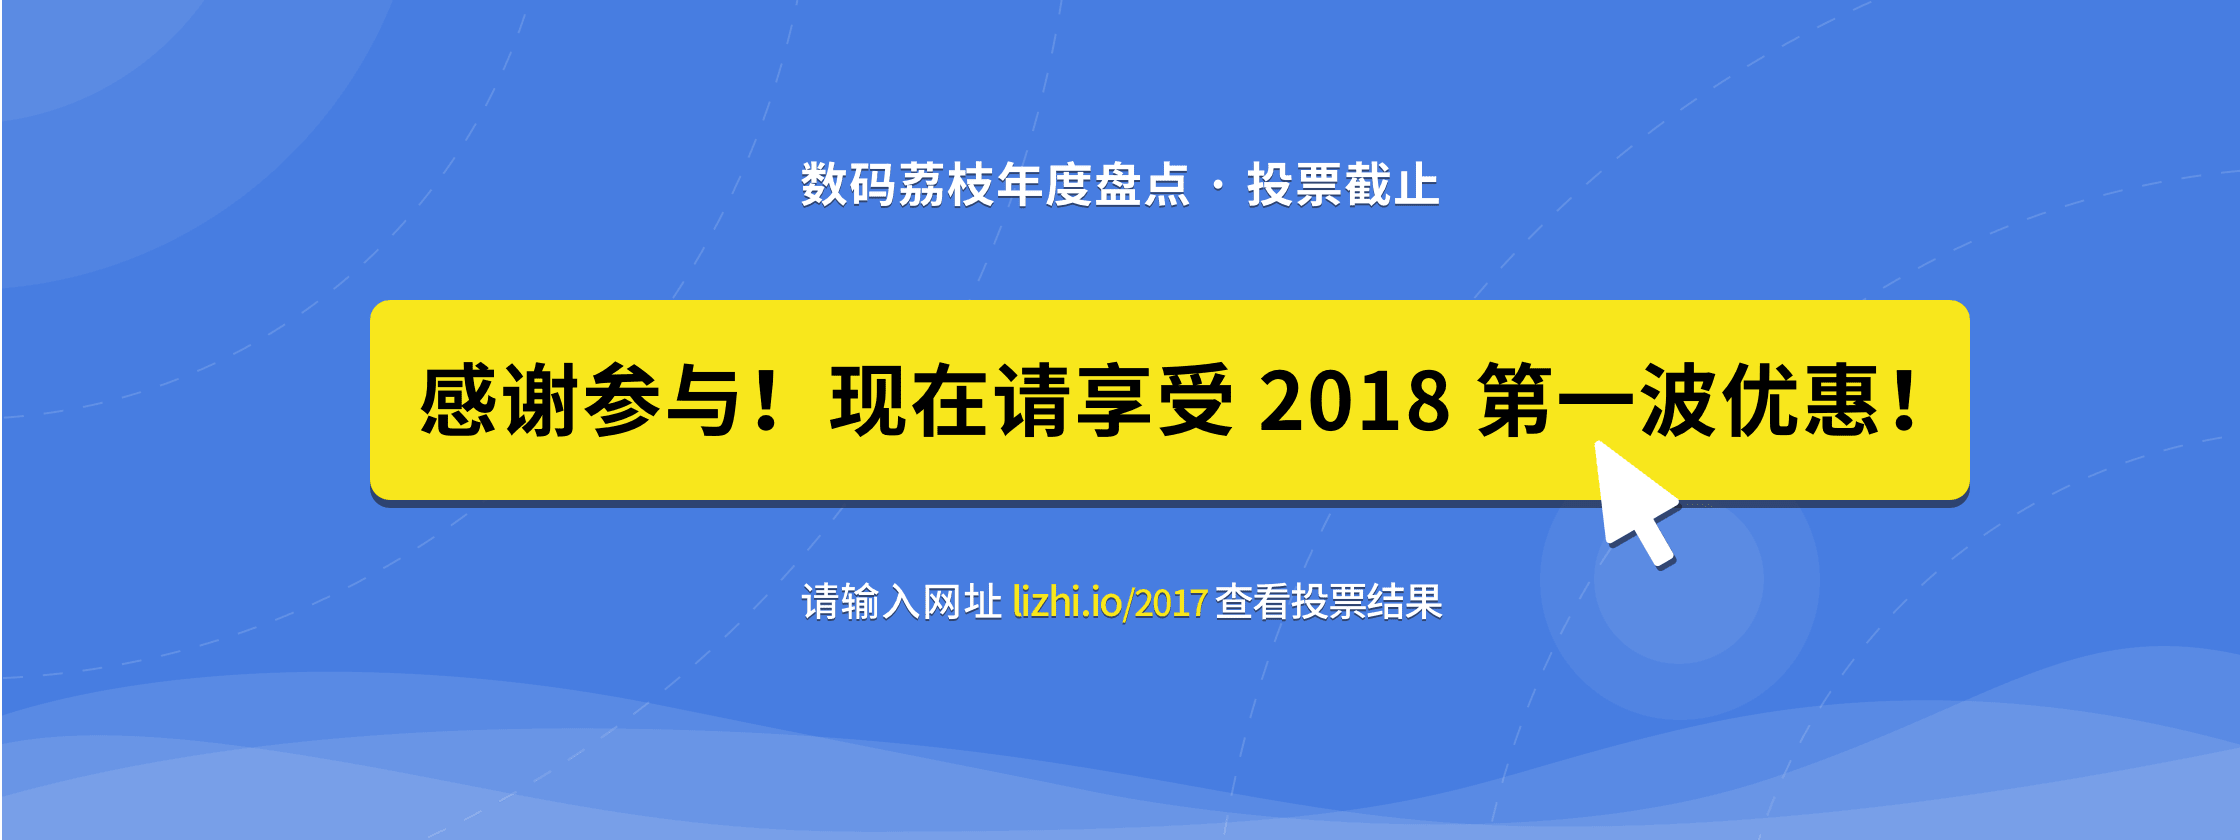 感谢参与投票活动     来数码荔枝享受 2018 首次优惠吧！